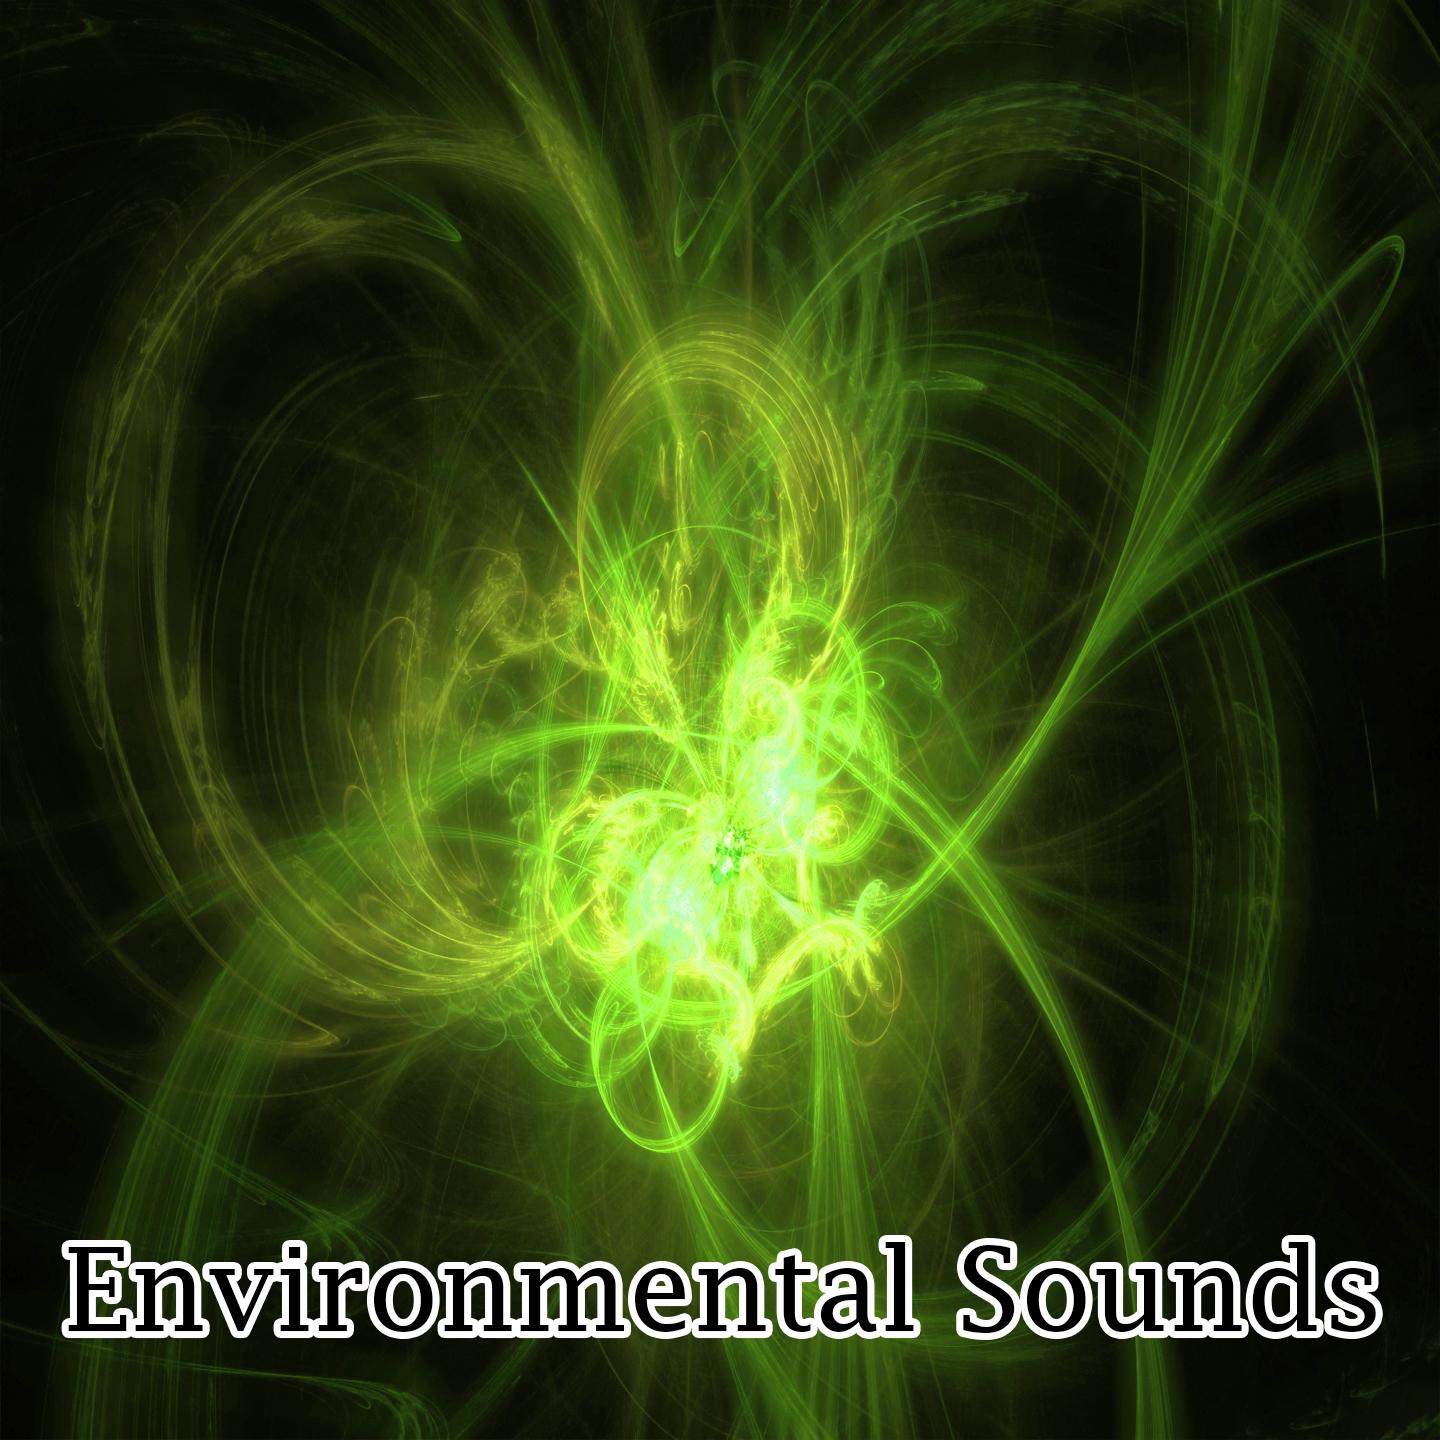 Environmental Sounds